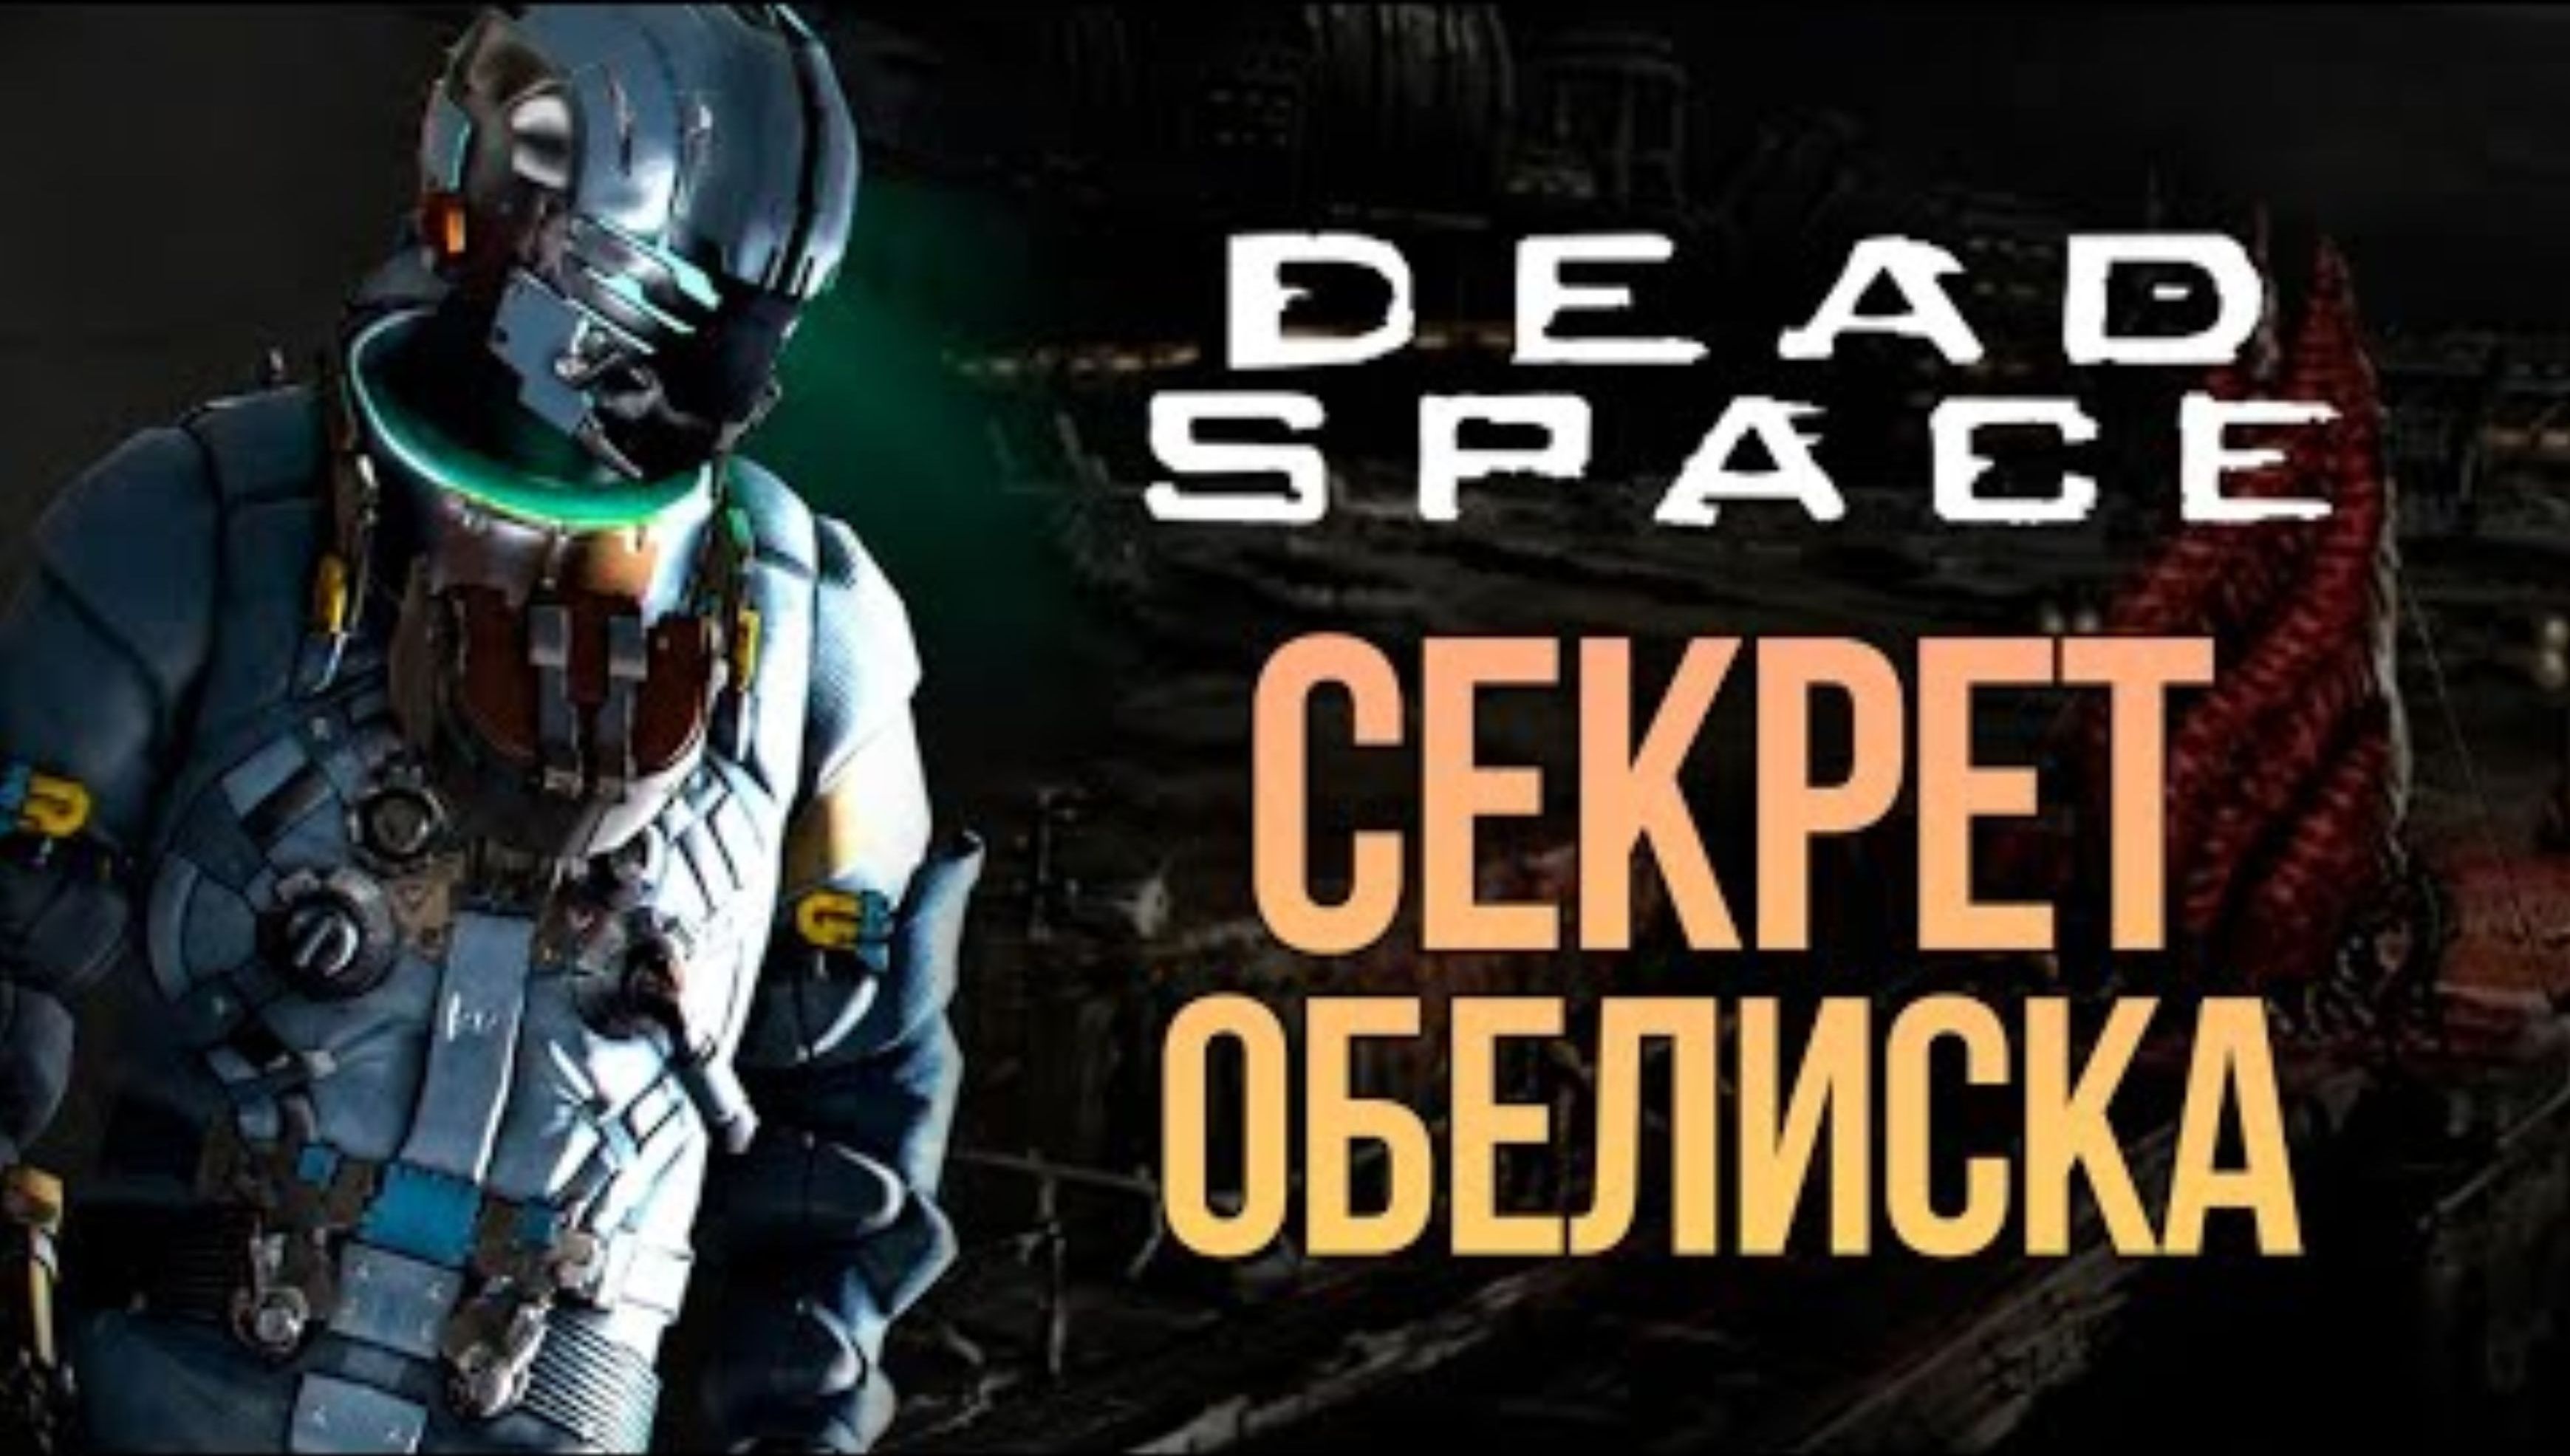 ЗАГАДОЧНЫЙ ОБЕЛИСК - DEAD SPACE REMAKE #10